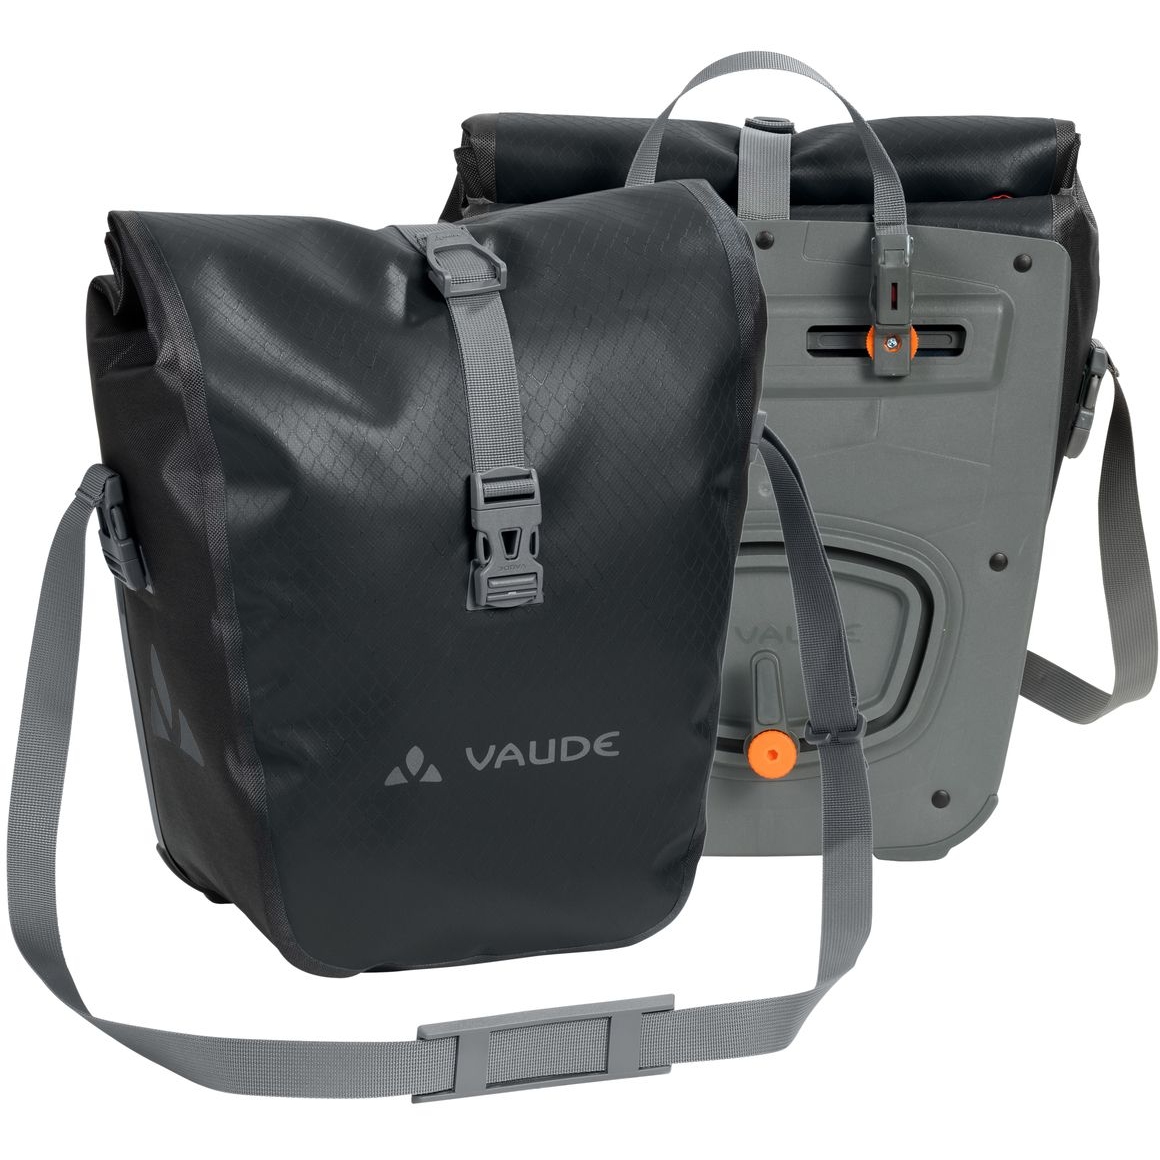 Produktbild von Vaude Aqua Vorderrad Fahrradtasche (Paar) 2x14L - schwarz